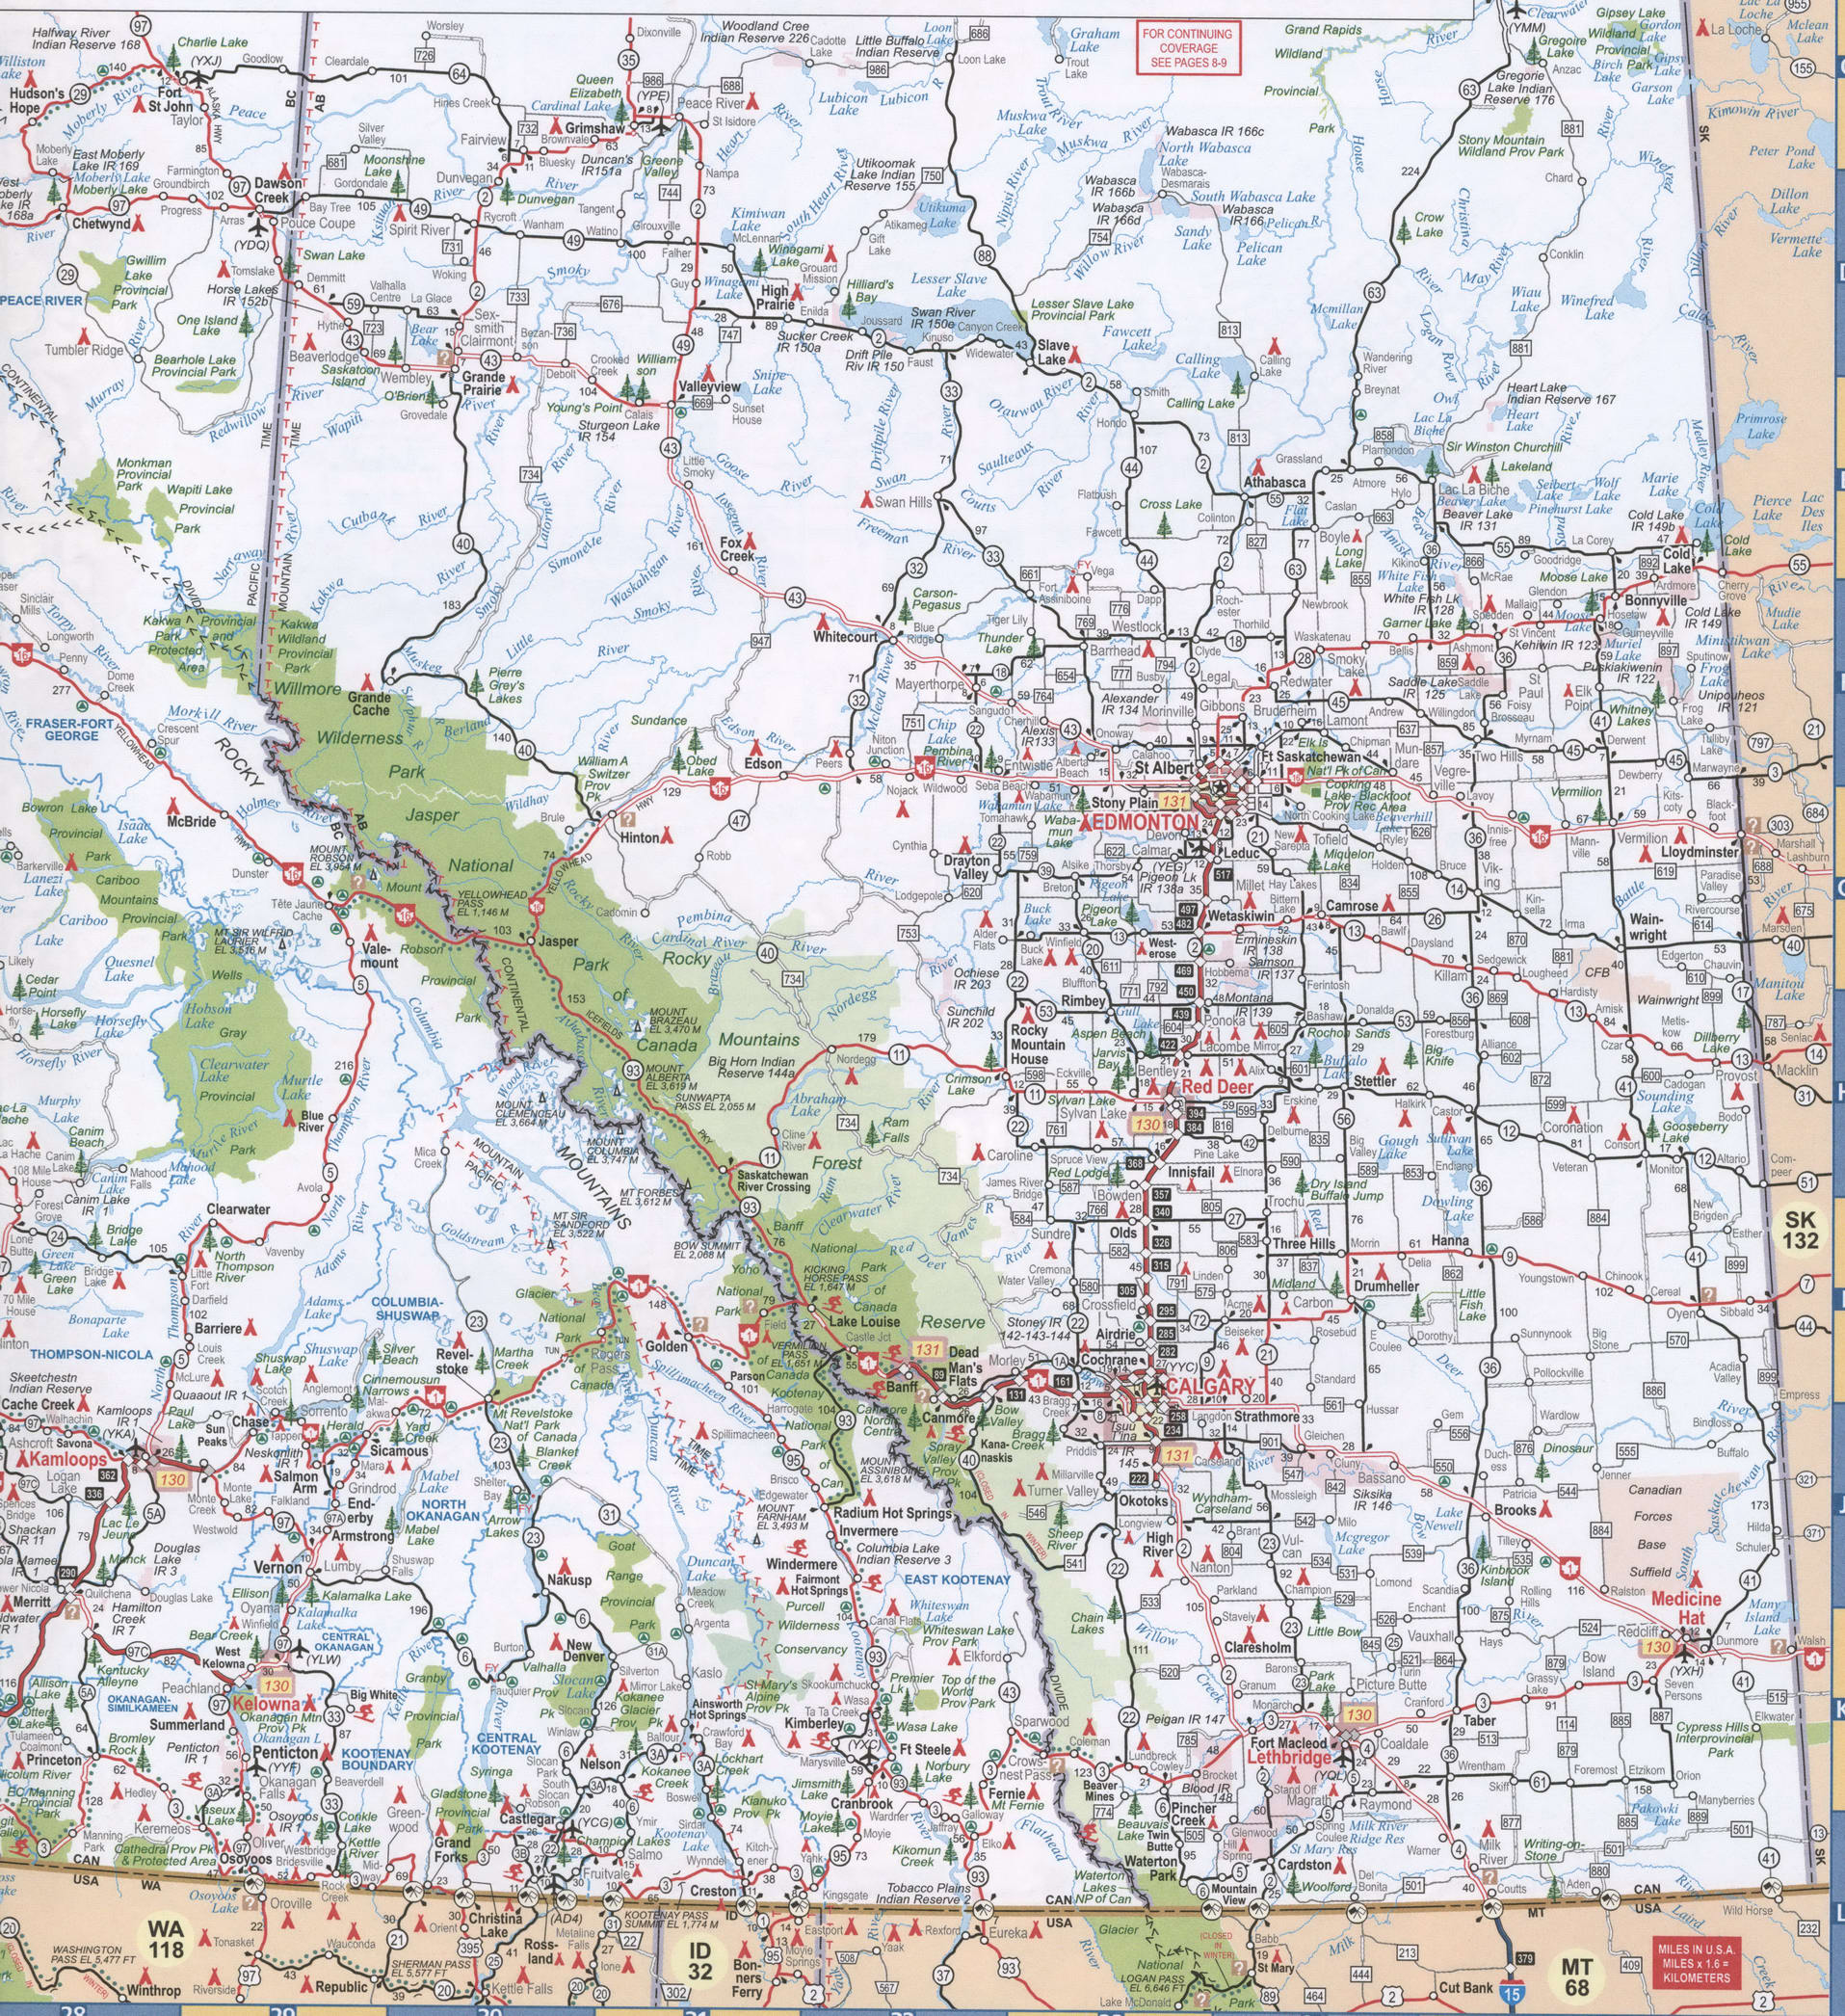 Alberta and British Columbia map